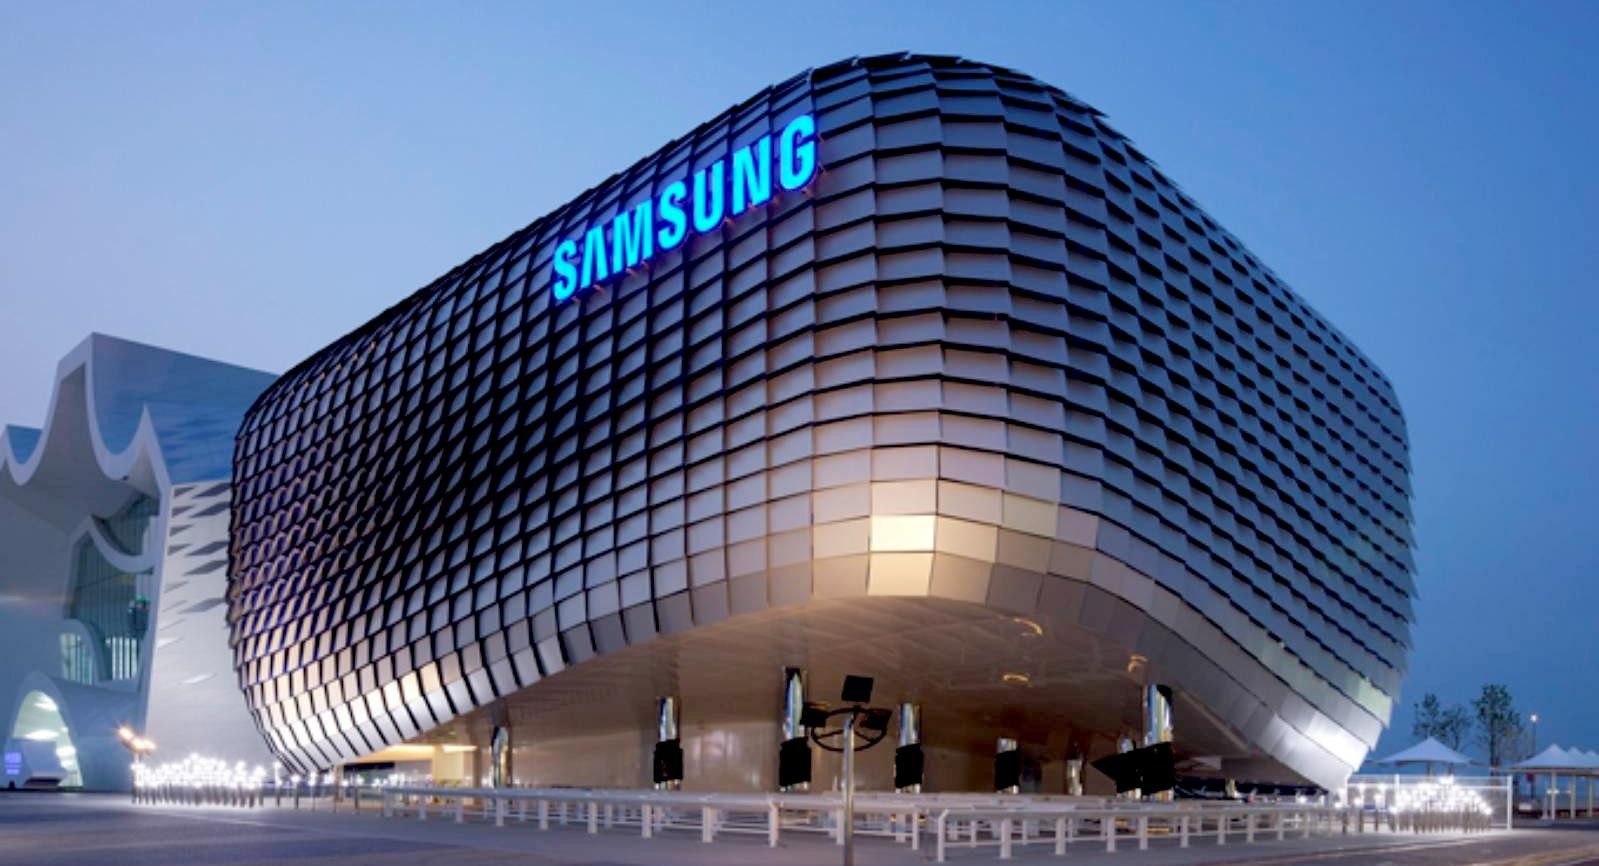 
Tập đoàn Samsung được thành lập vào năm 1938 bởi Lee Byung chul ông là một thương nhân kiêm nhà tư bản công nghiệp. Ảnh minh họa
